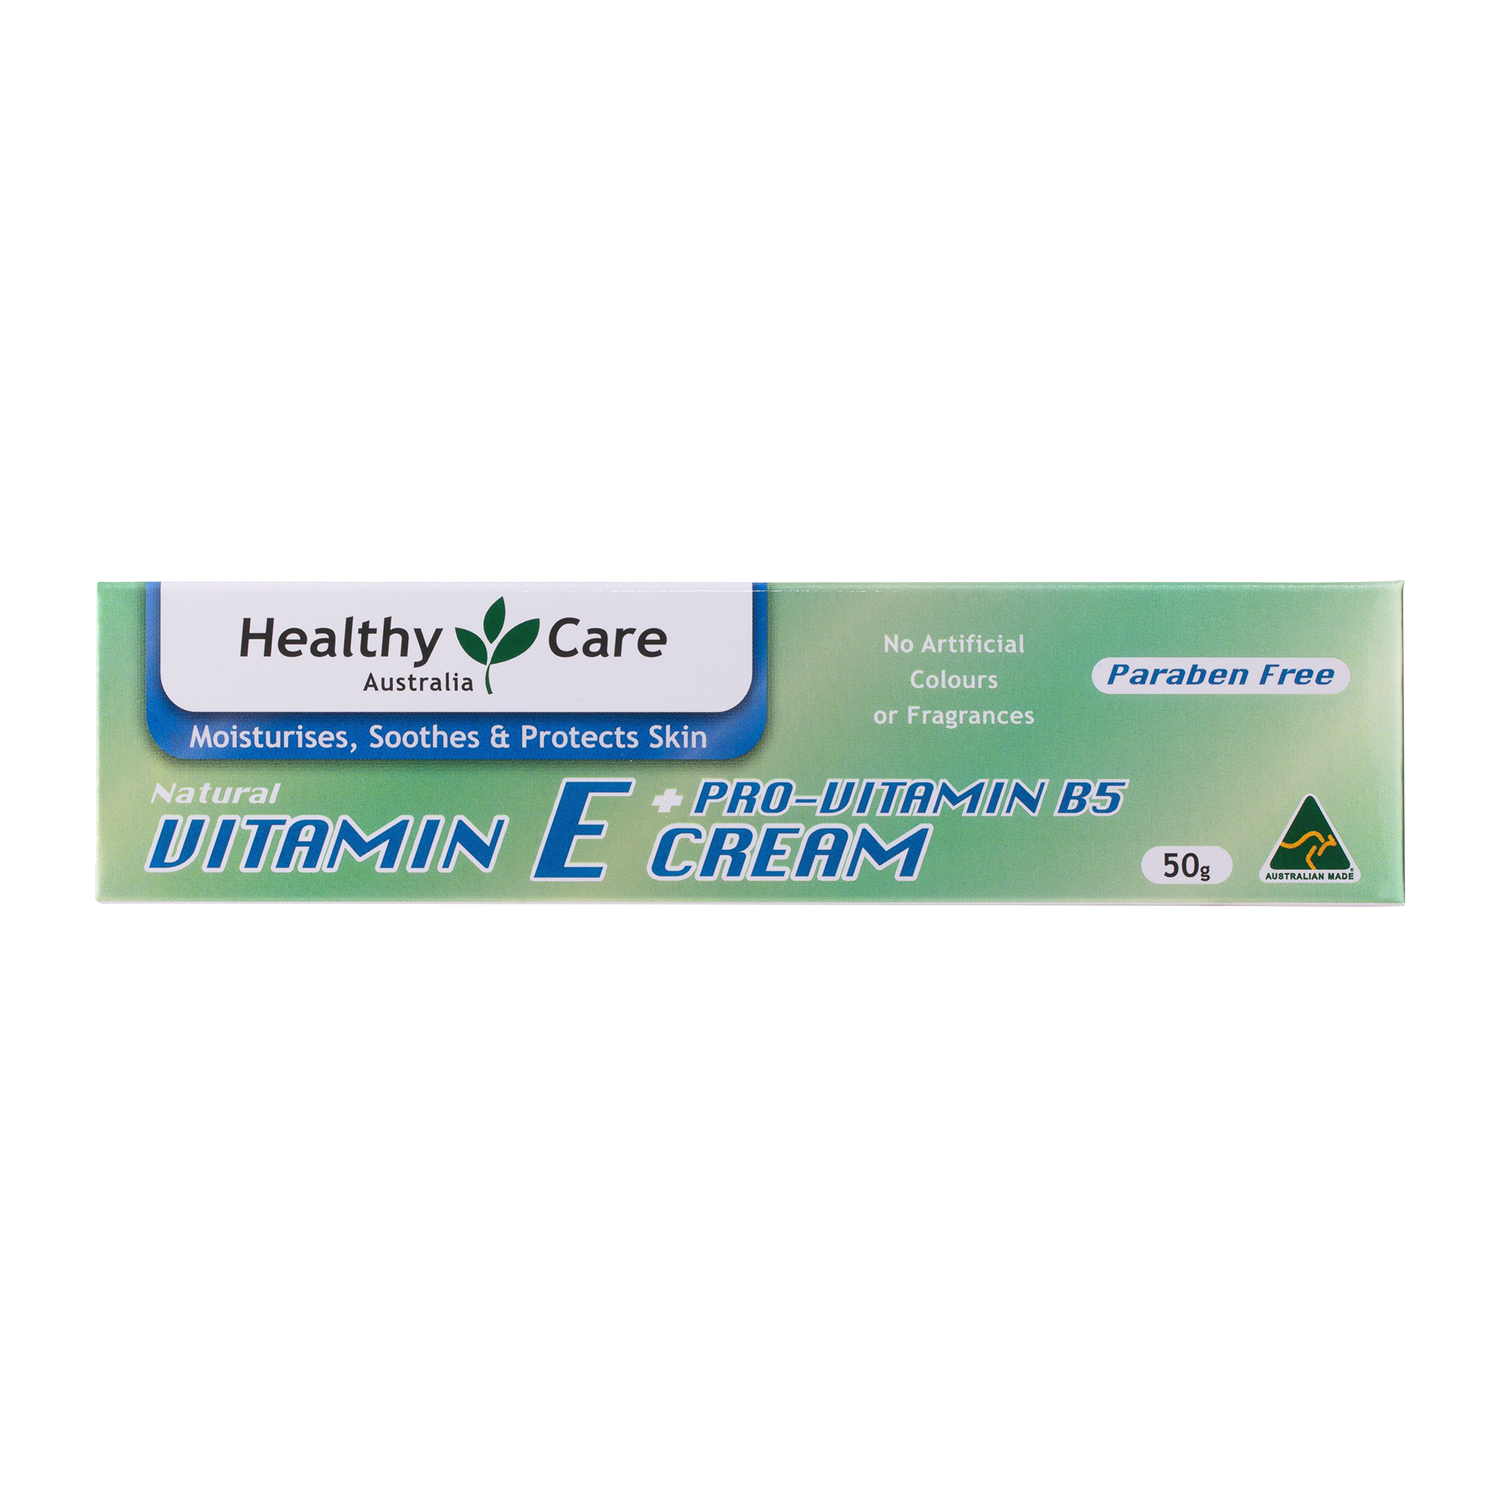 Vitamin E + Pro-Vitamin B5 Cream 50g in box packaging-Lotion & Moisturizer-Healthy Care Australia